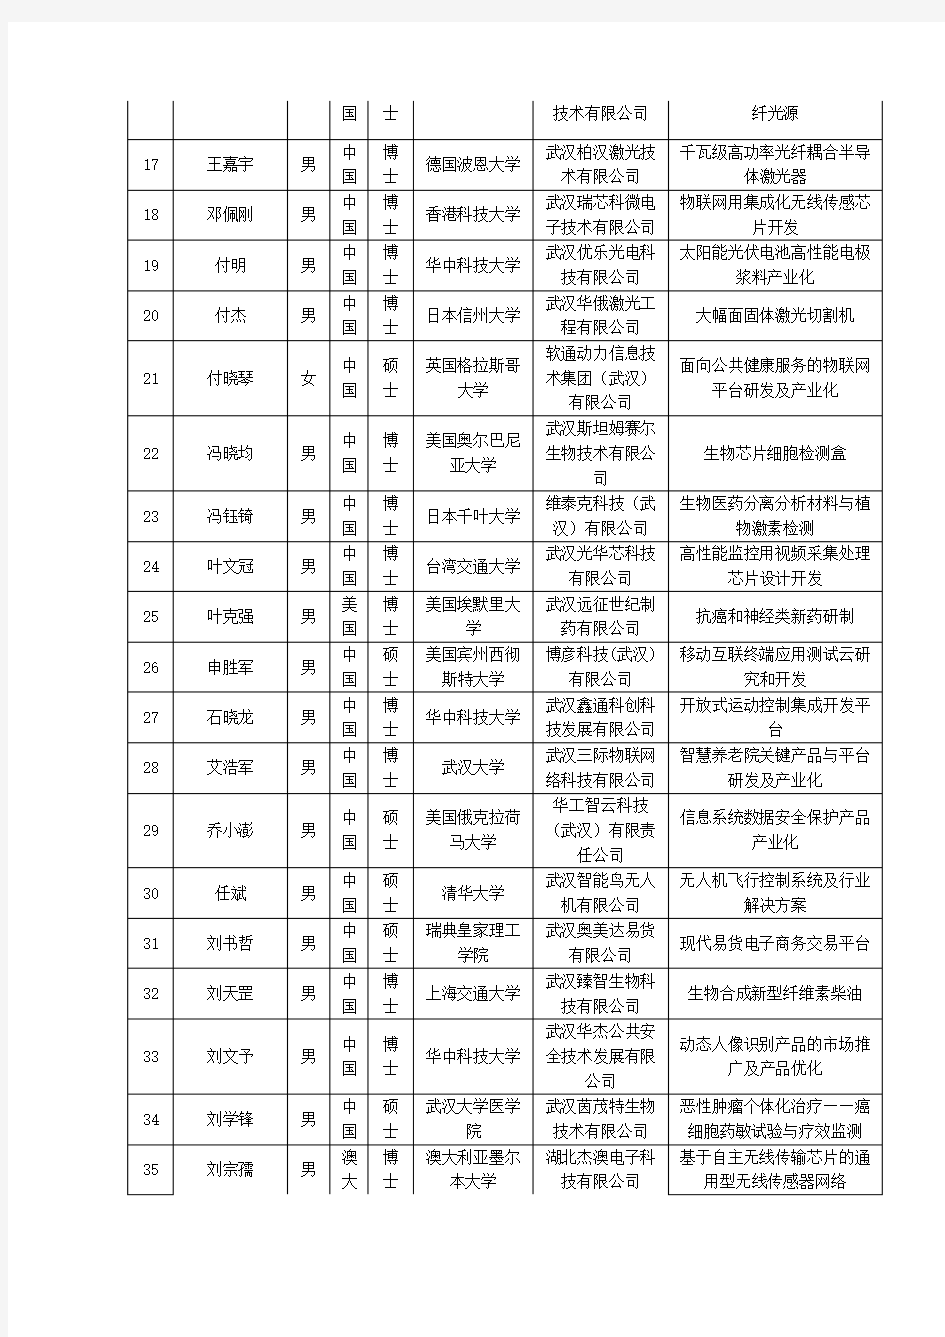 3551光谷人才计划武汉东湖新技术开发区